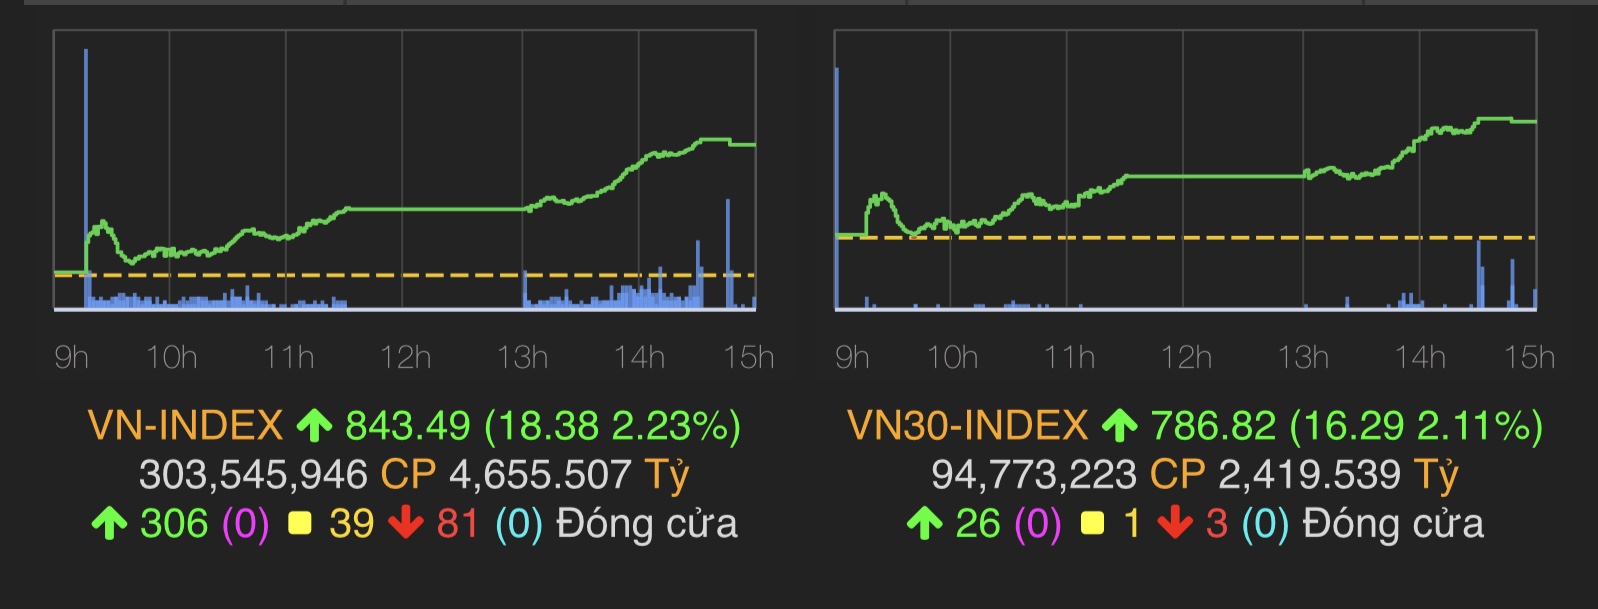 VN-Index tăng 18,38 điểm (2,23%) lên 843,49 điểm